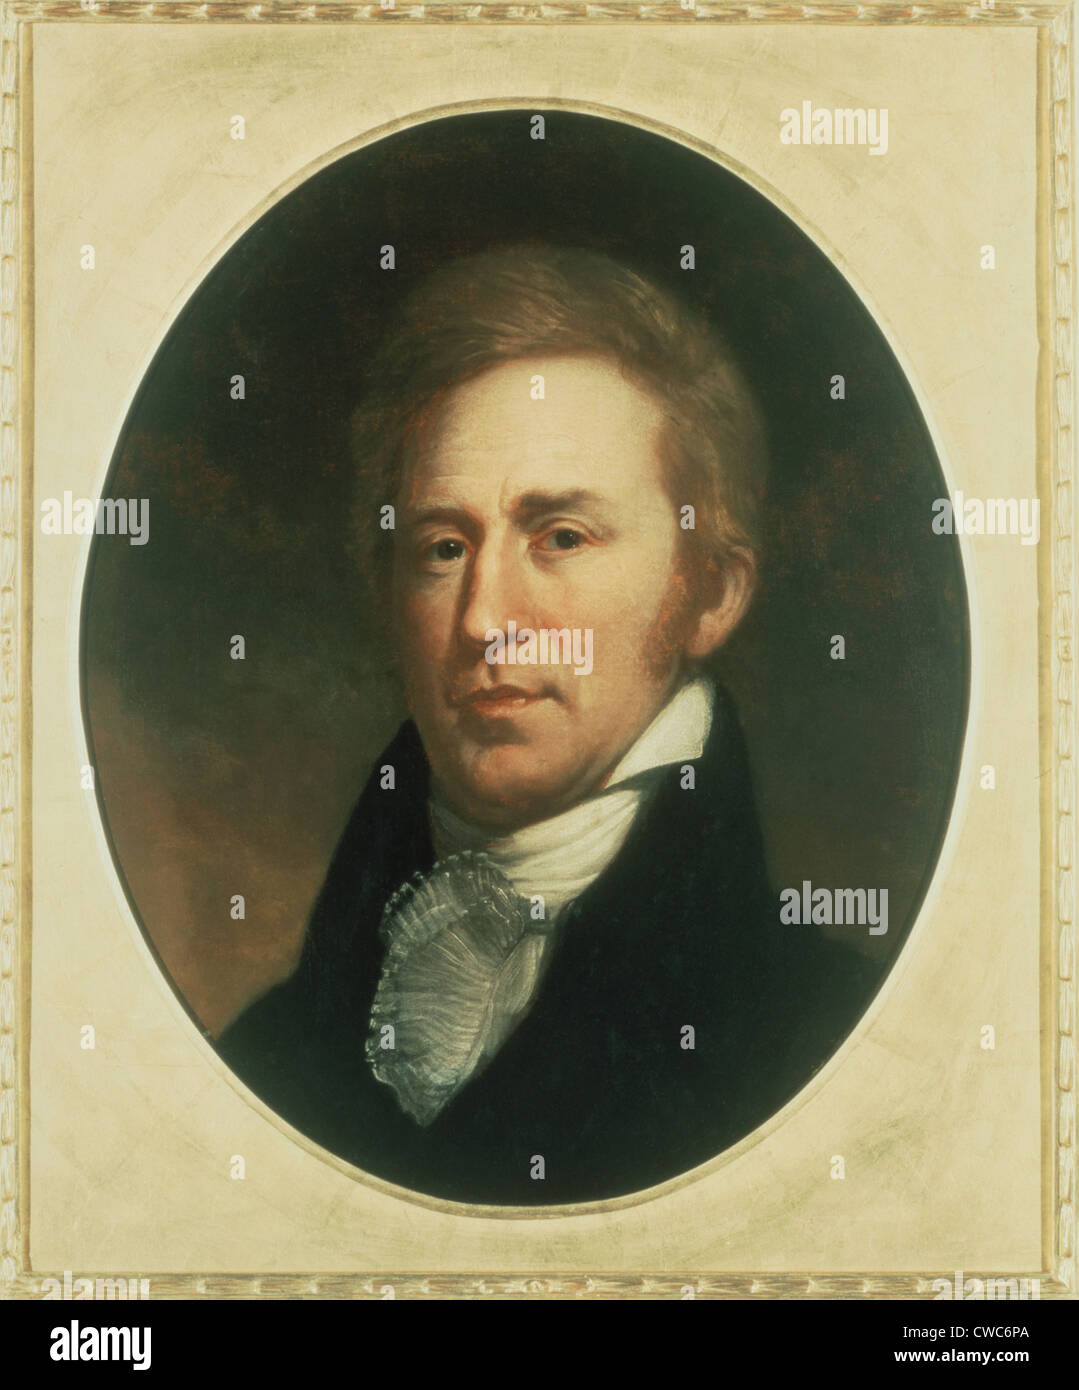 William Clark 1770-1838. Porträt von Charles Wilson Peale. Stockfoto